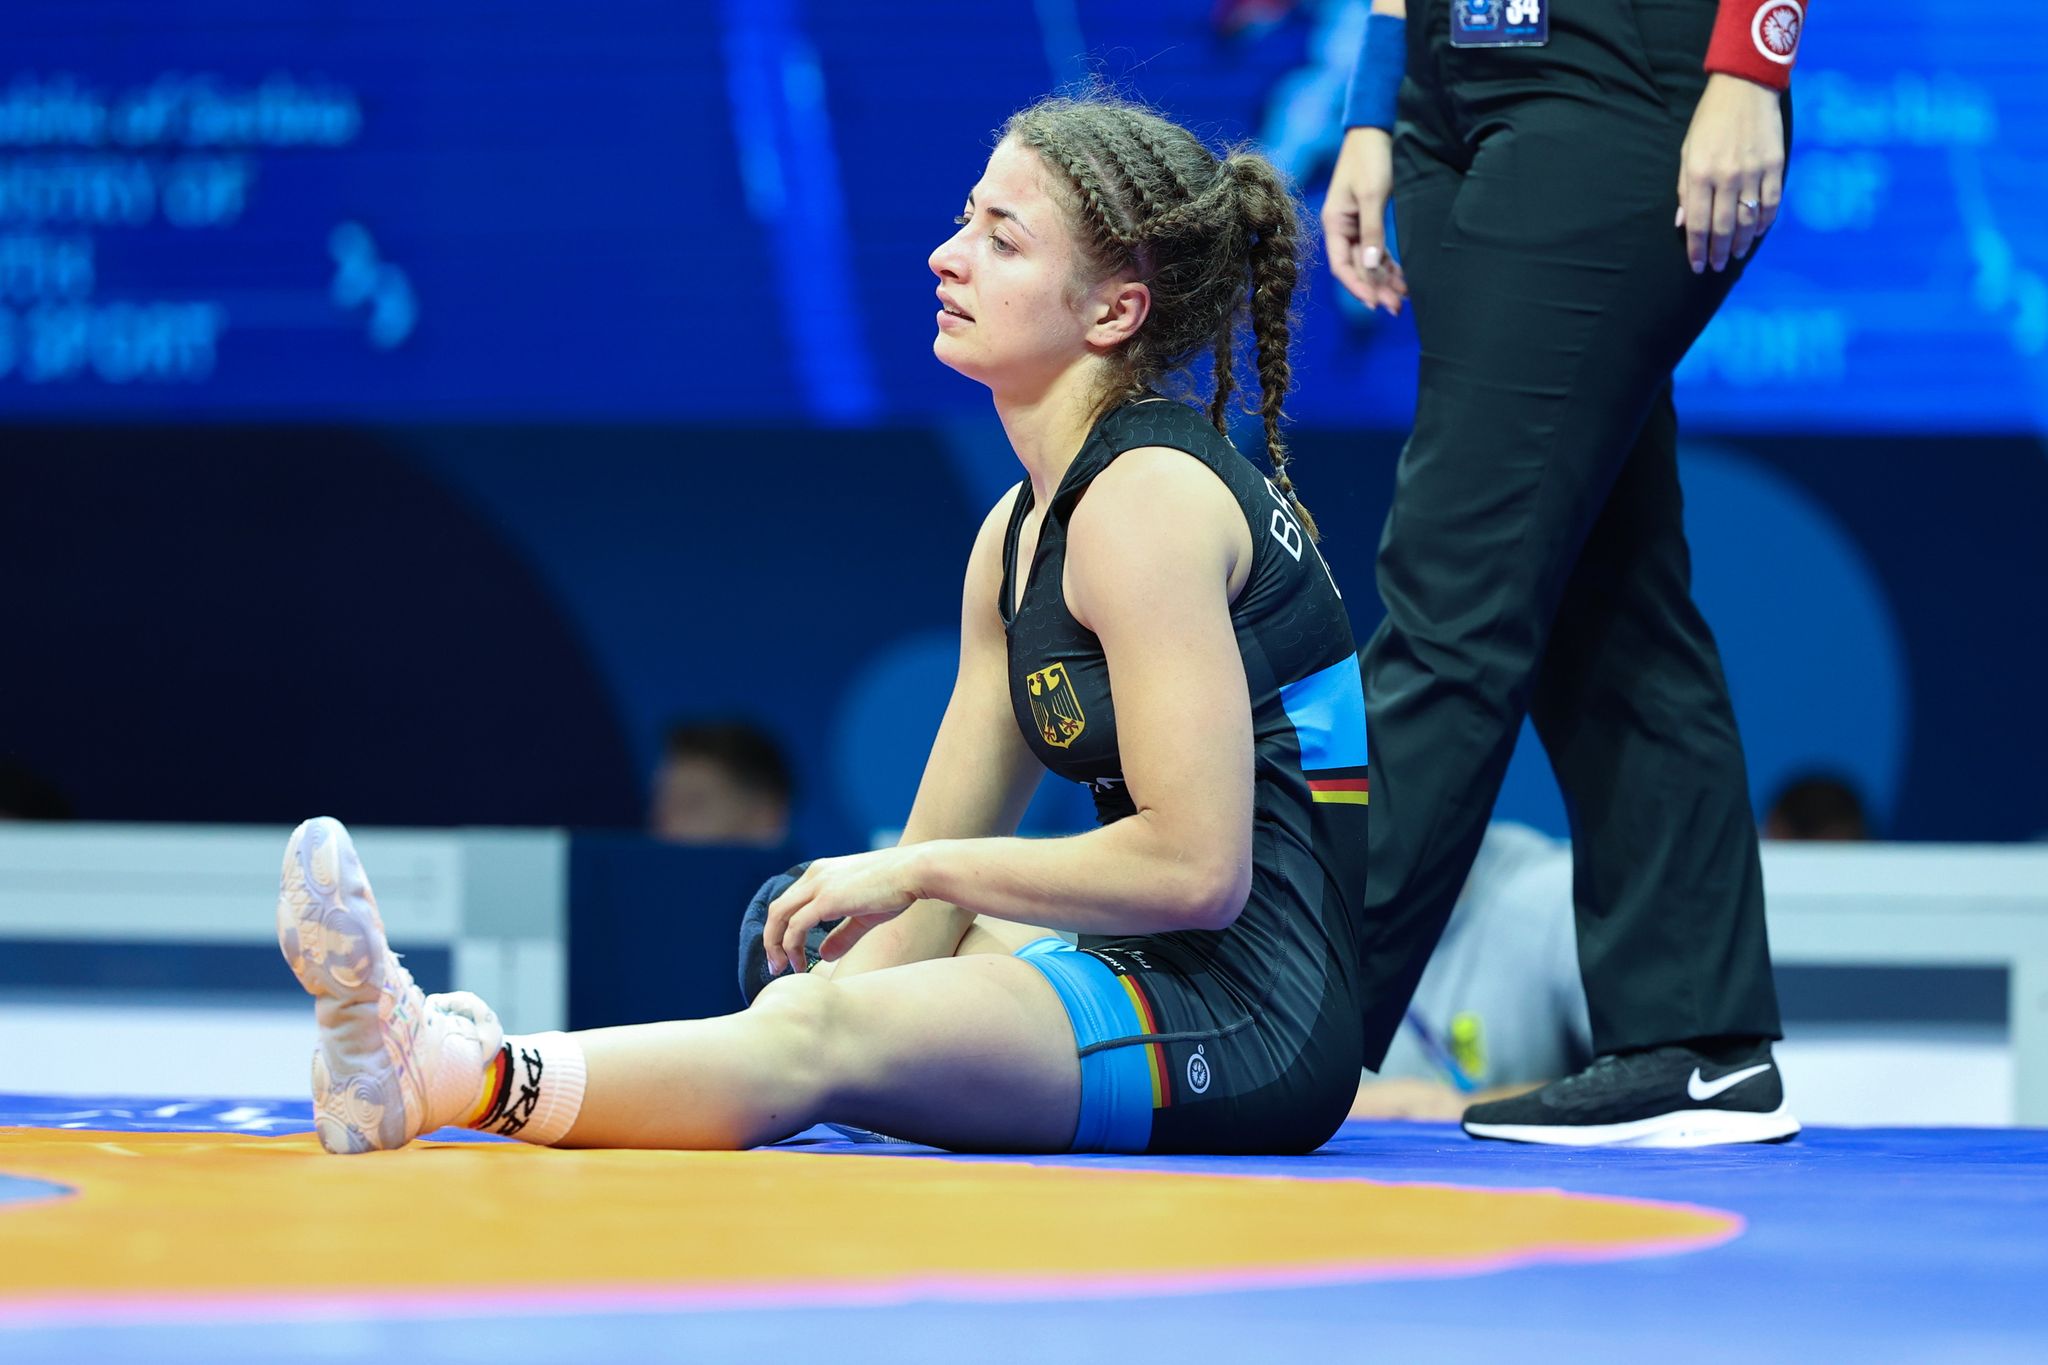 Bei der WM in Belgrad frühzeitig ausgeschieden: Elena Brugger sitzt nach dem Kampf auf der Matte.